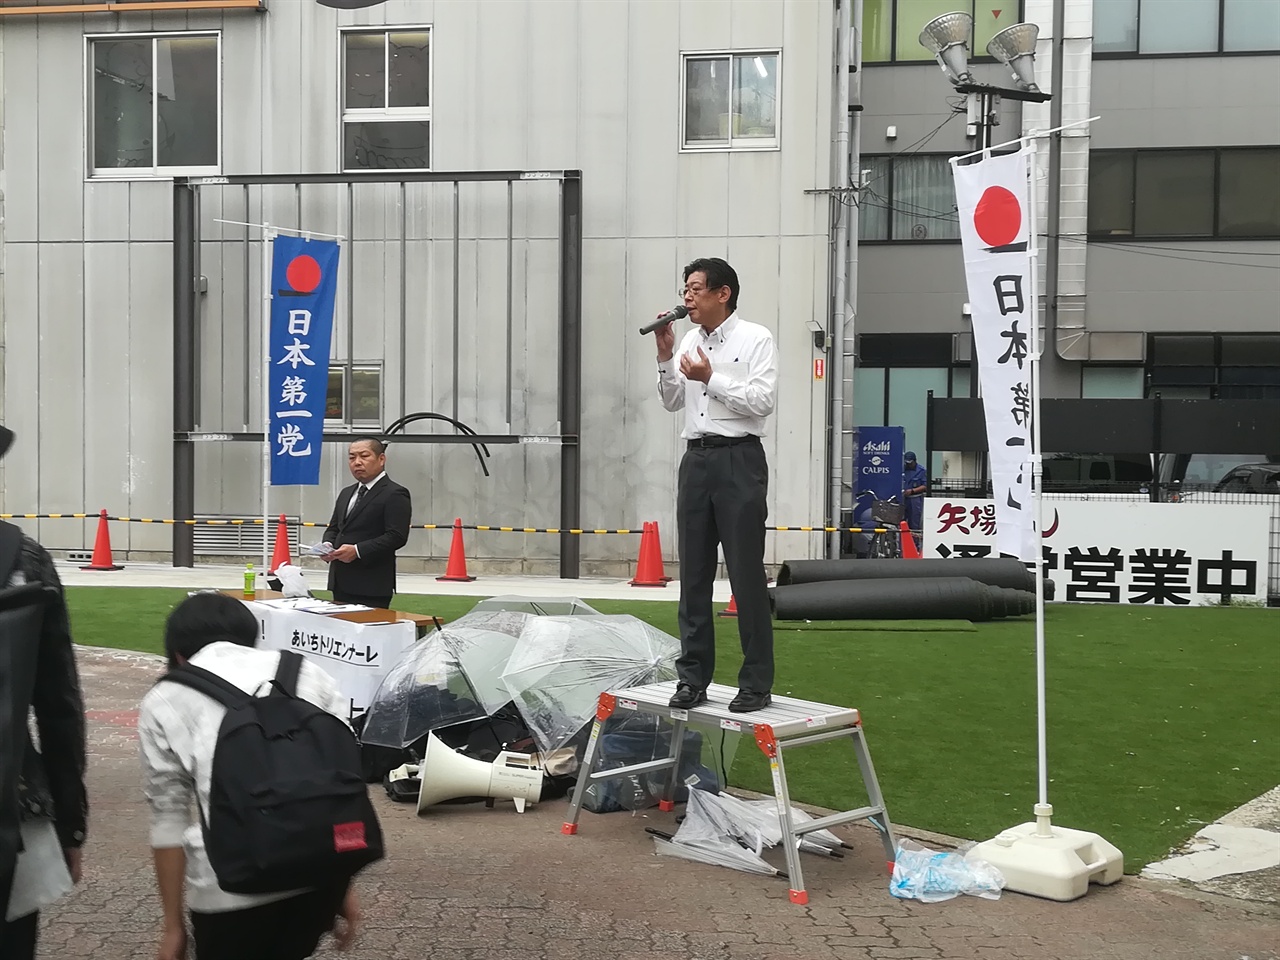 전시 재개 집회를 비난하는 우익 단체(일본 제일당) 회원